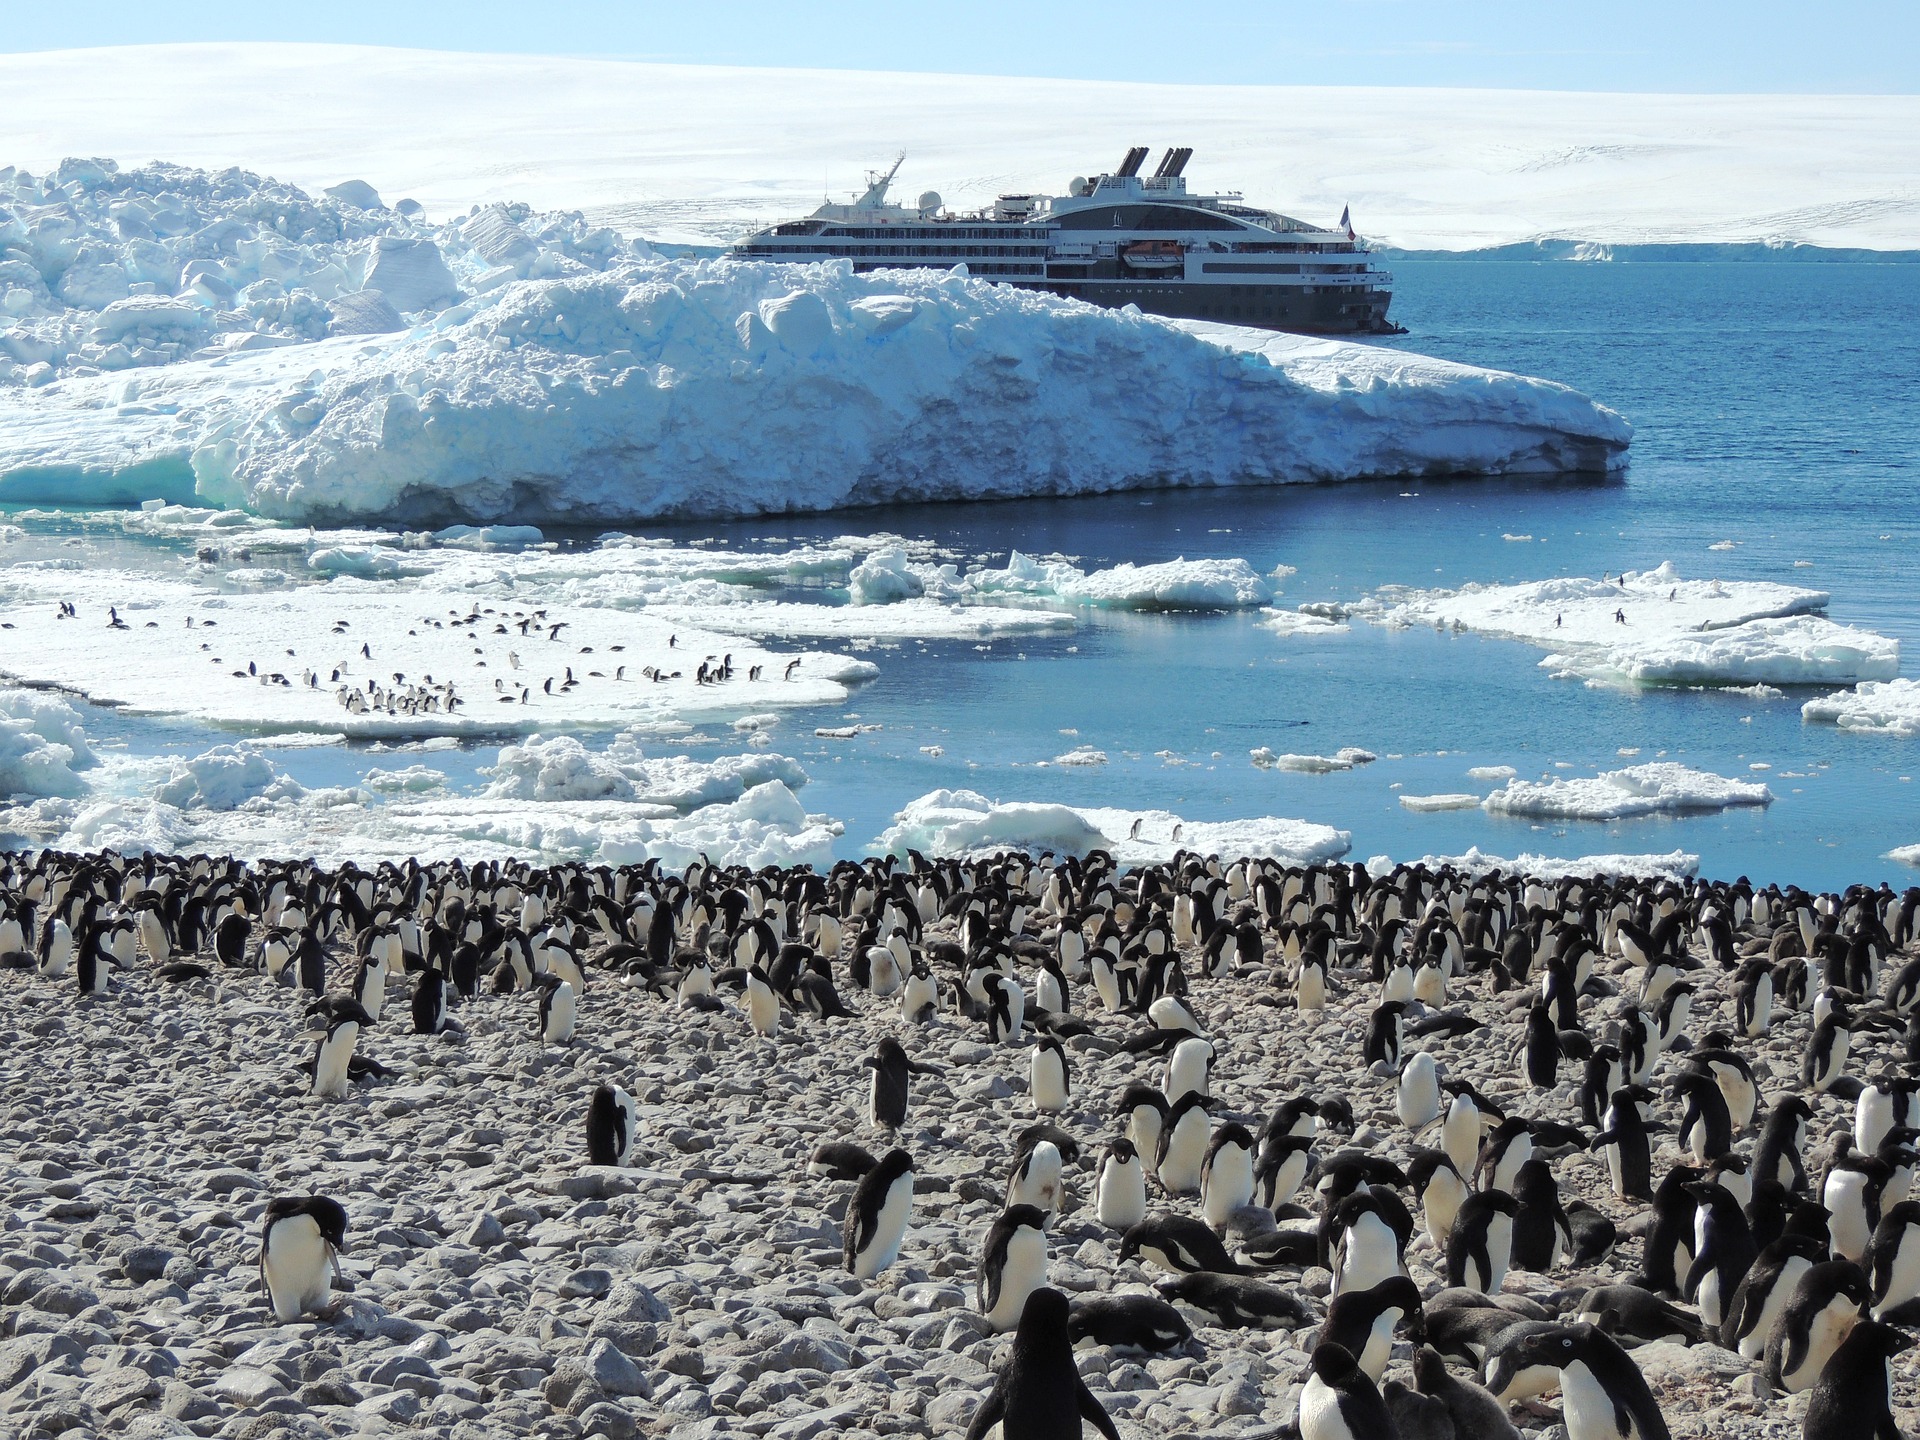 Поднимать пингвинов в антарктиде вакансии. Население Антарктиды. Tcnm KB gbyiudnys d fynfhrnblt.